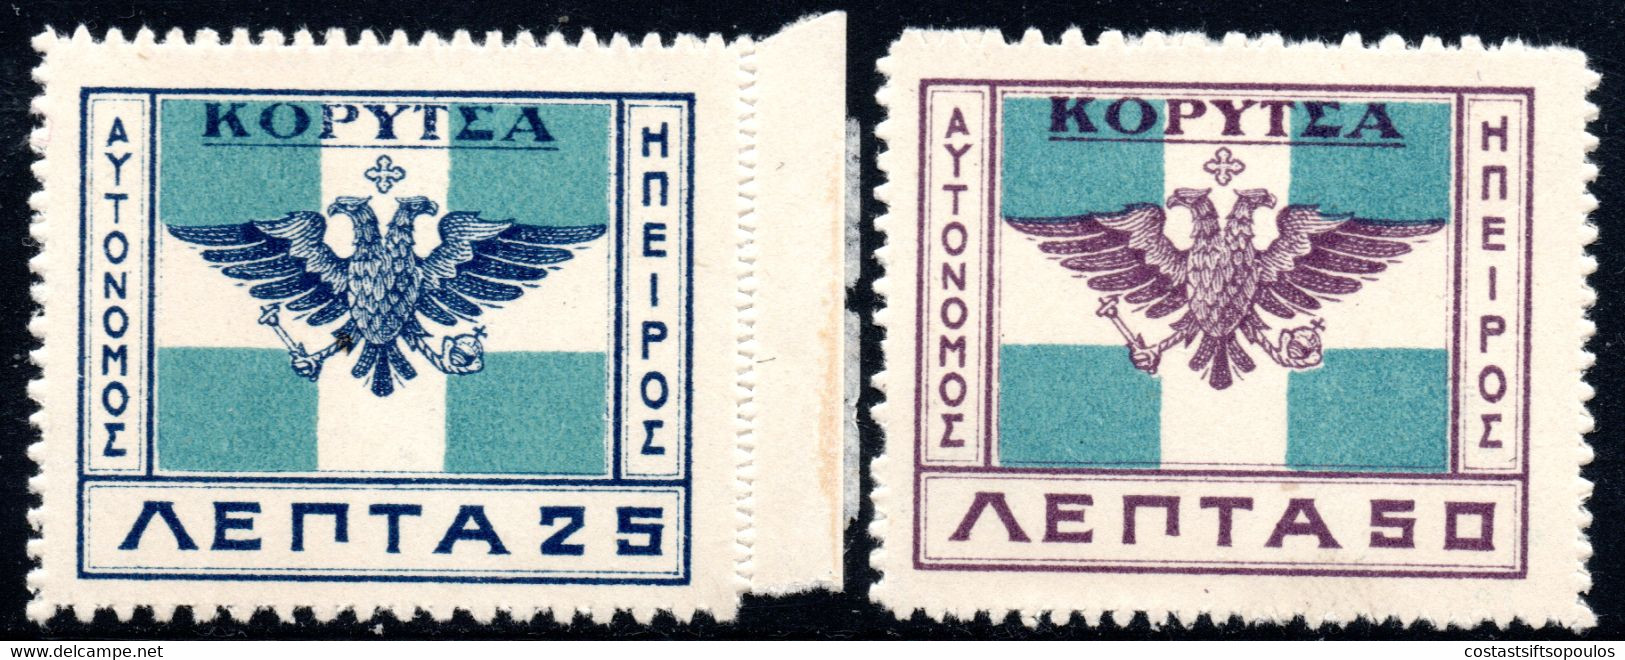 377.GREECE.ALBANIA,N.EPIRUS.1914 KORYTSA ISSUE,HELLAS 94 BH.B PERF.10 1/2  AT BOTTOM,95 AH.T PERF.10 1/2 AT TOP,MNH - Epirus & Albanie